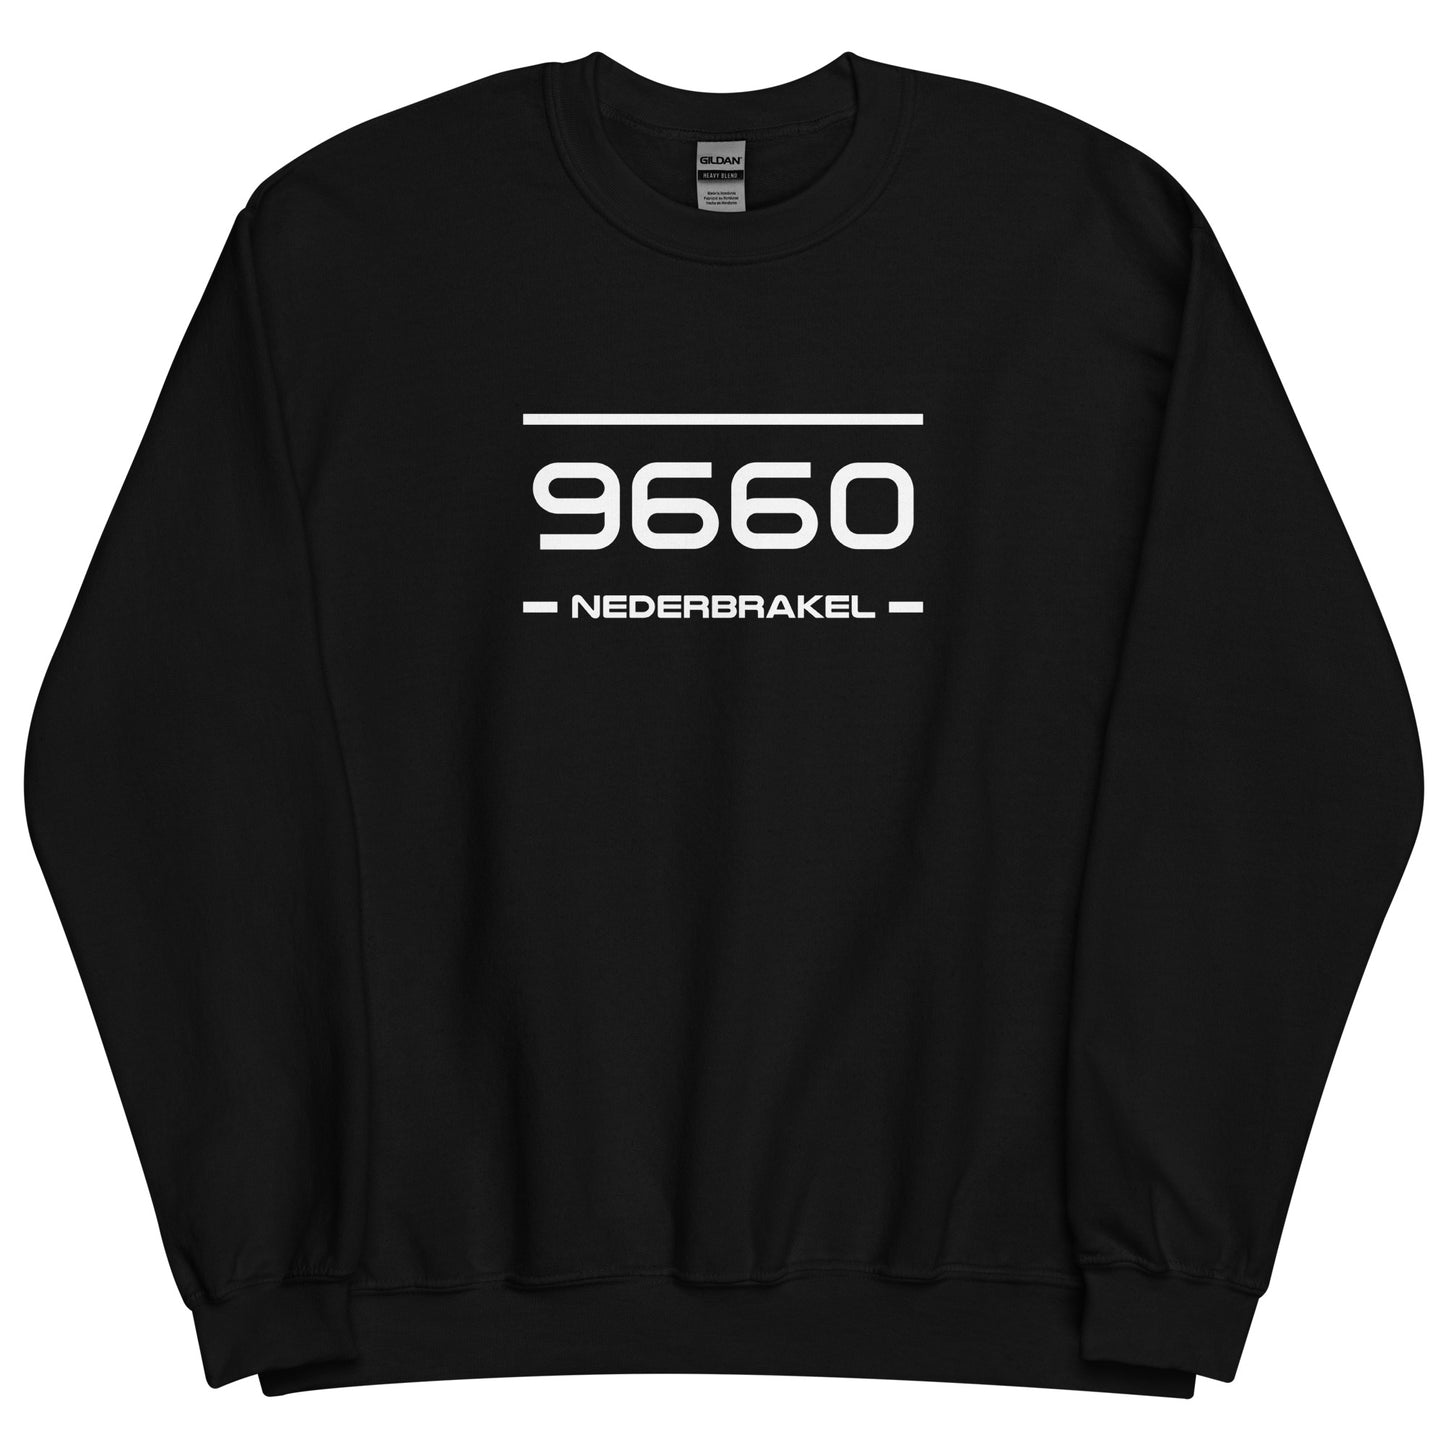 Sweater - 9660 - Nederbrakel (M/V)